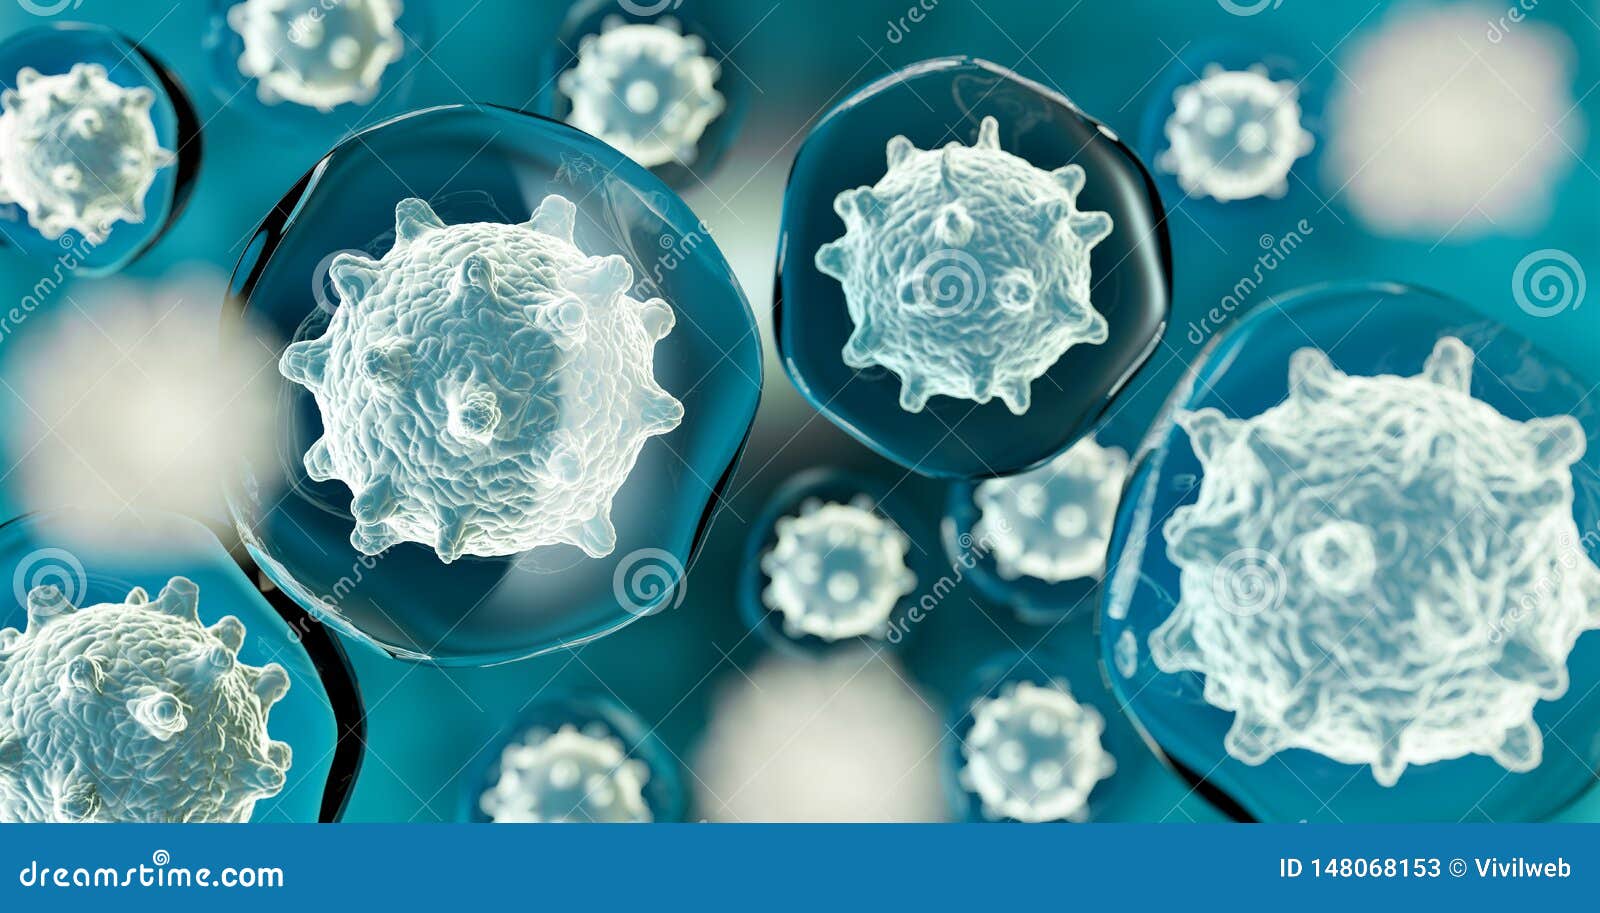 pathogen micro organisms in blue background